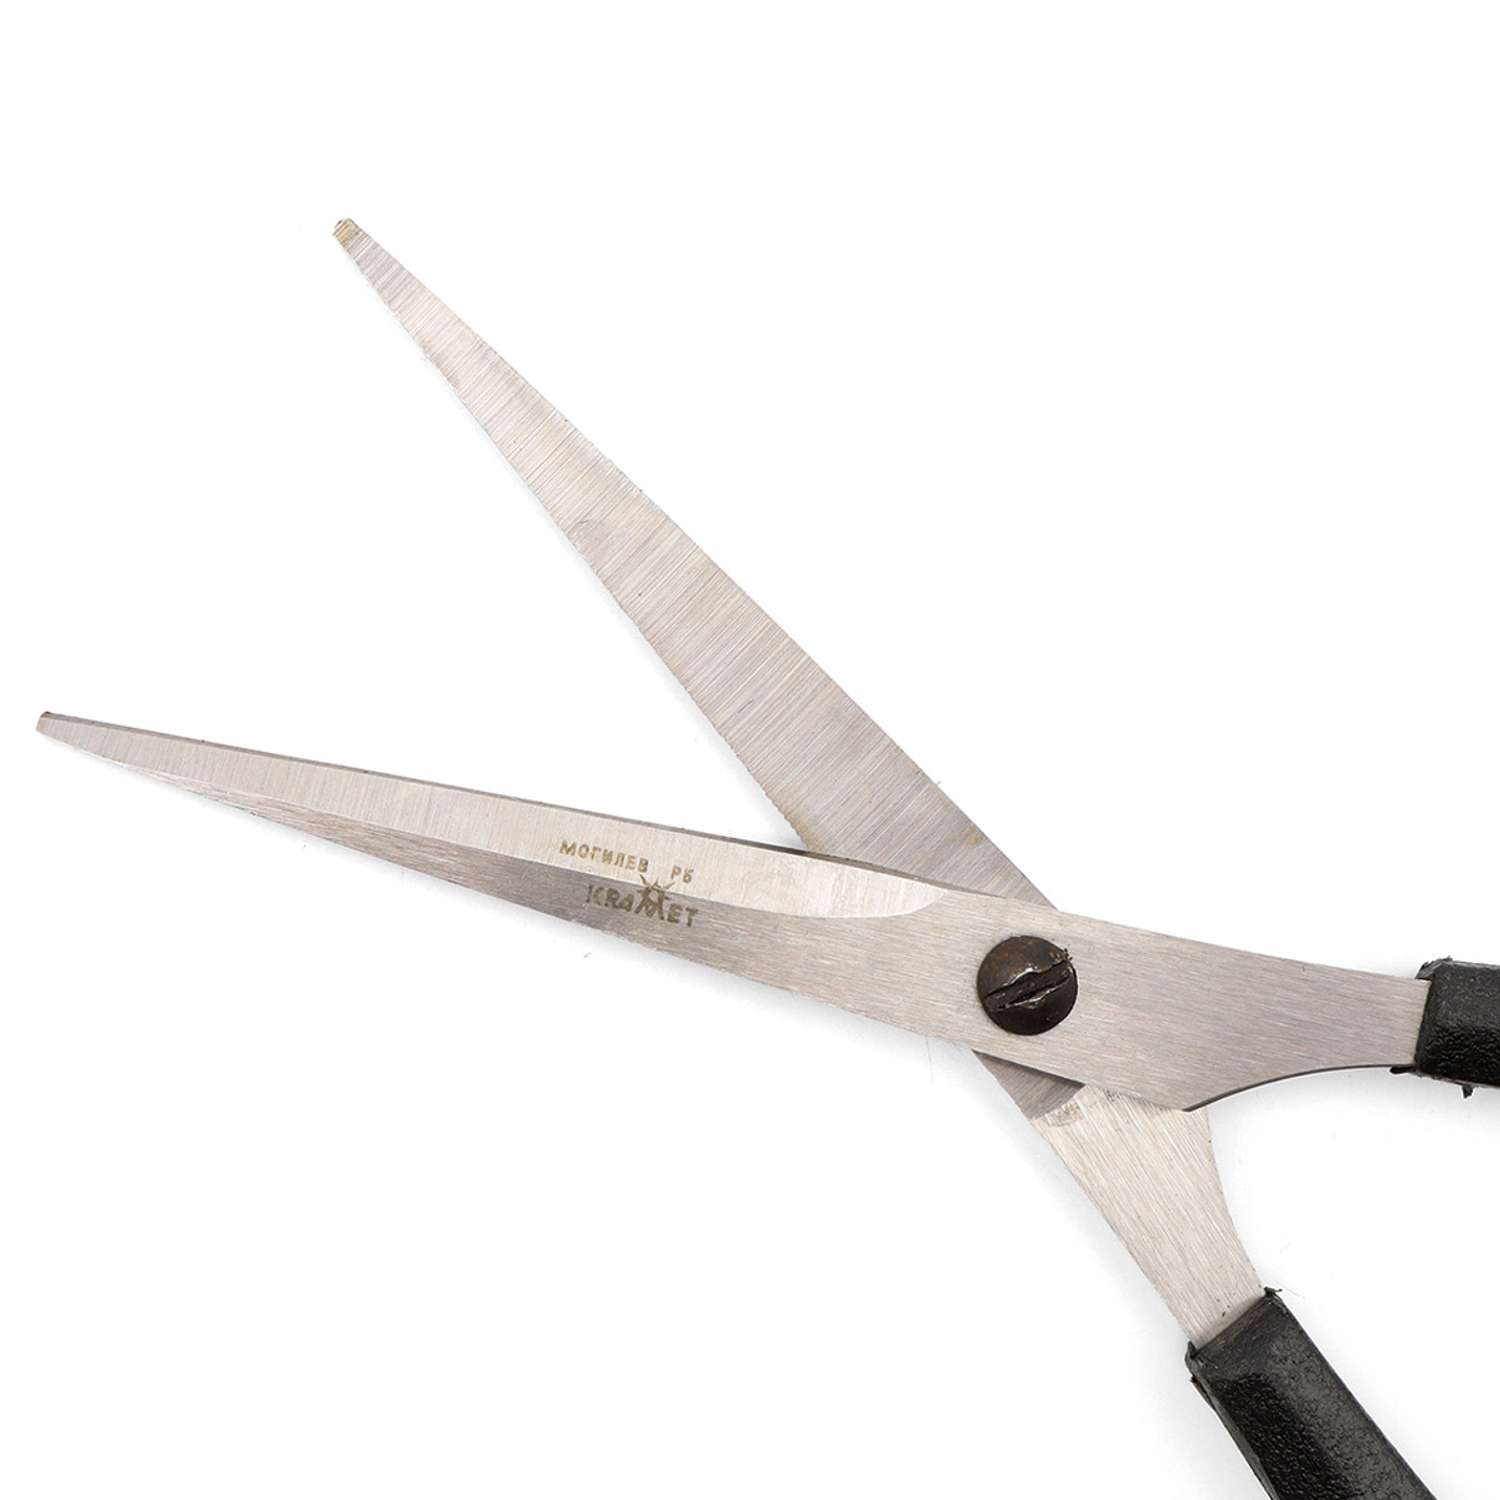 Ножницы универсальные KARMET стальные с микро насечкой пластиковые ручки с усилителем 17 см - фото 2